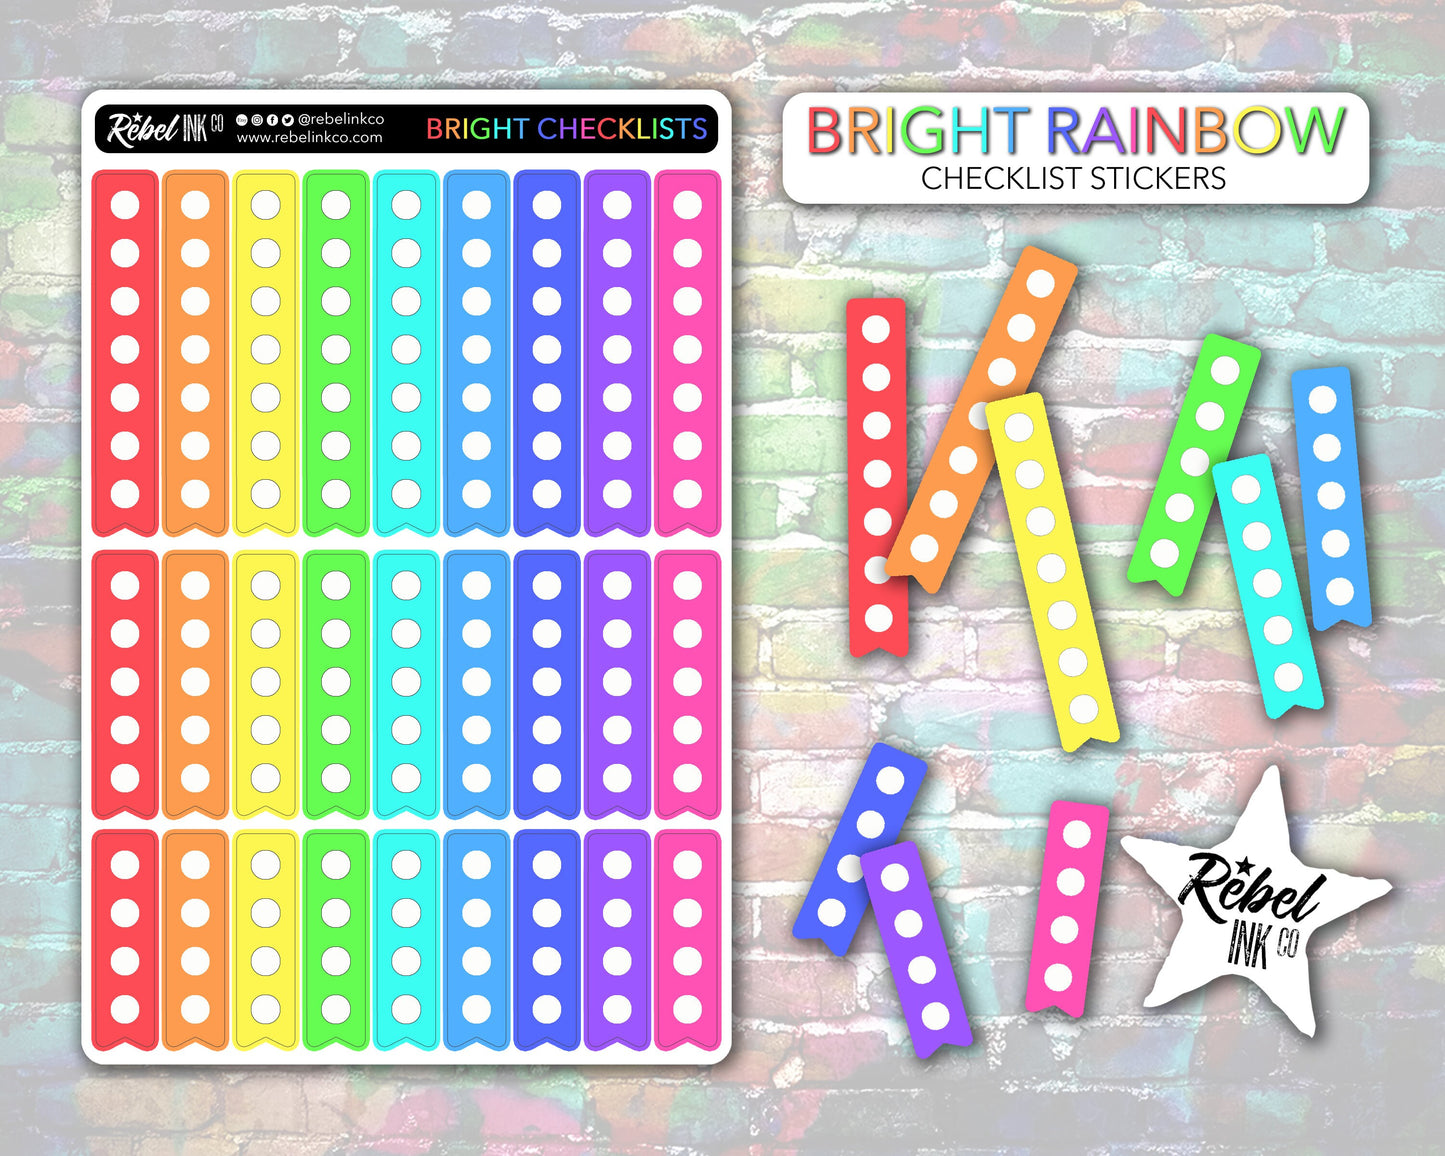 Checklist Stickers - Bright Rainbow